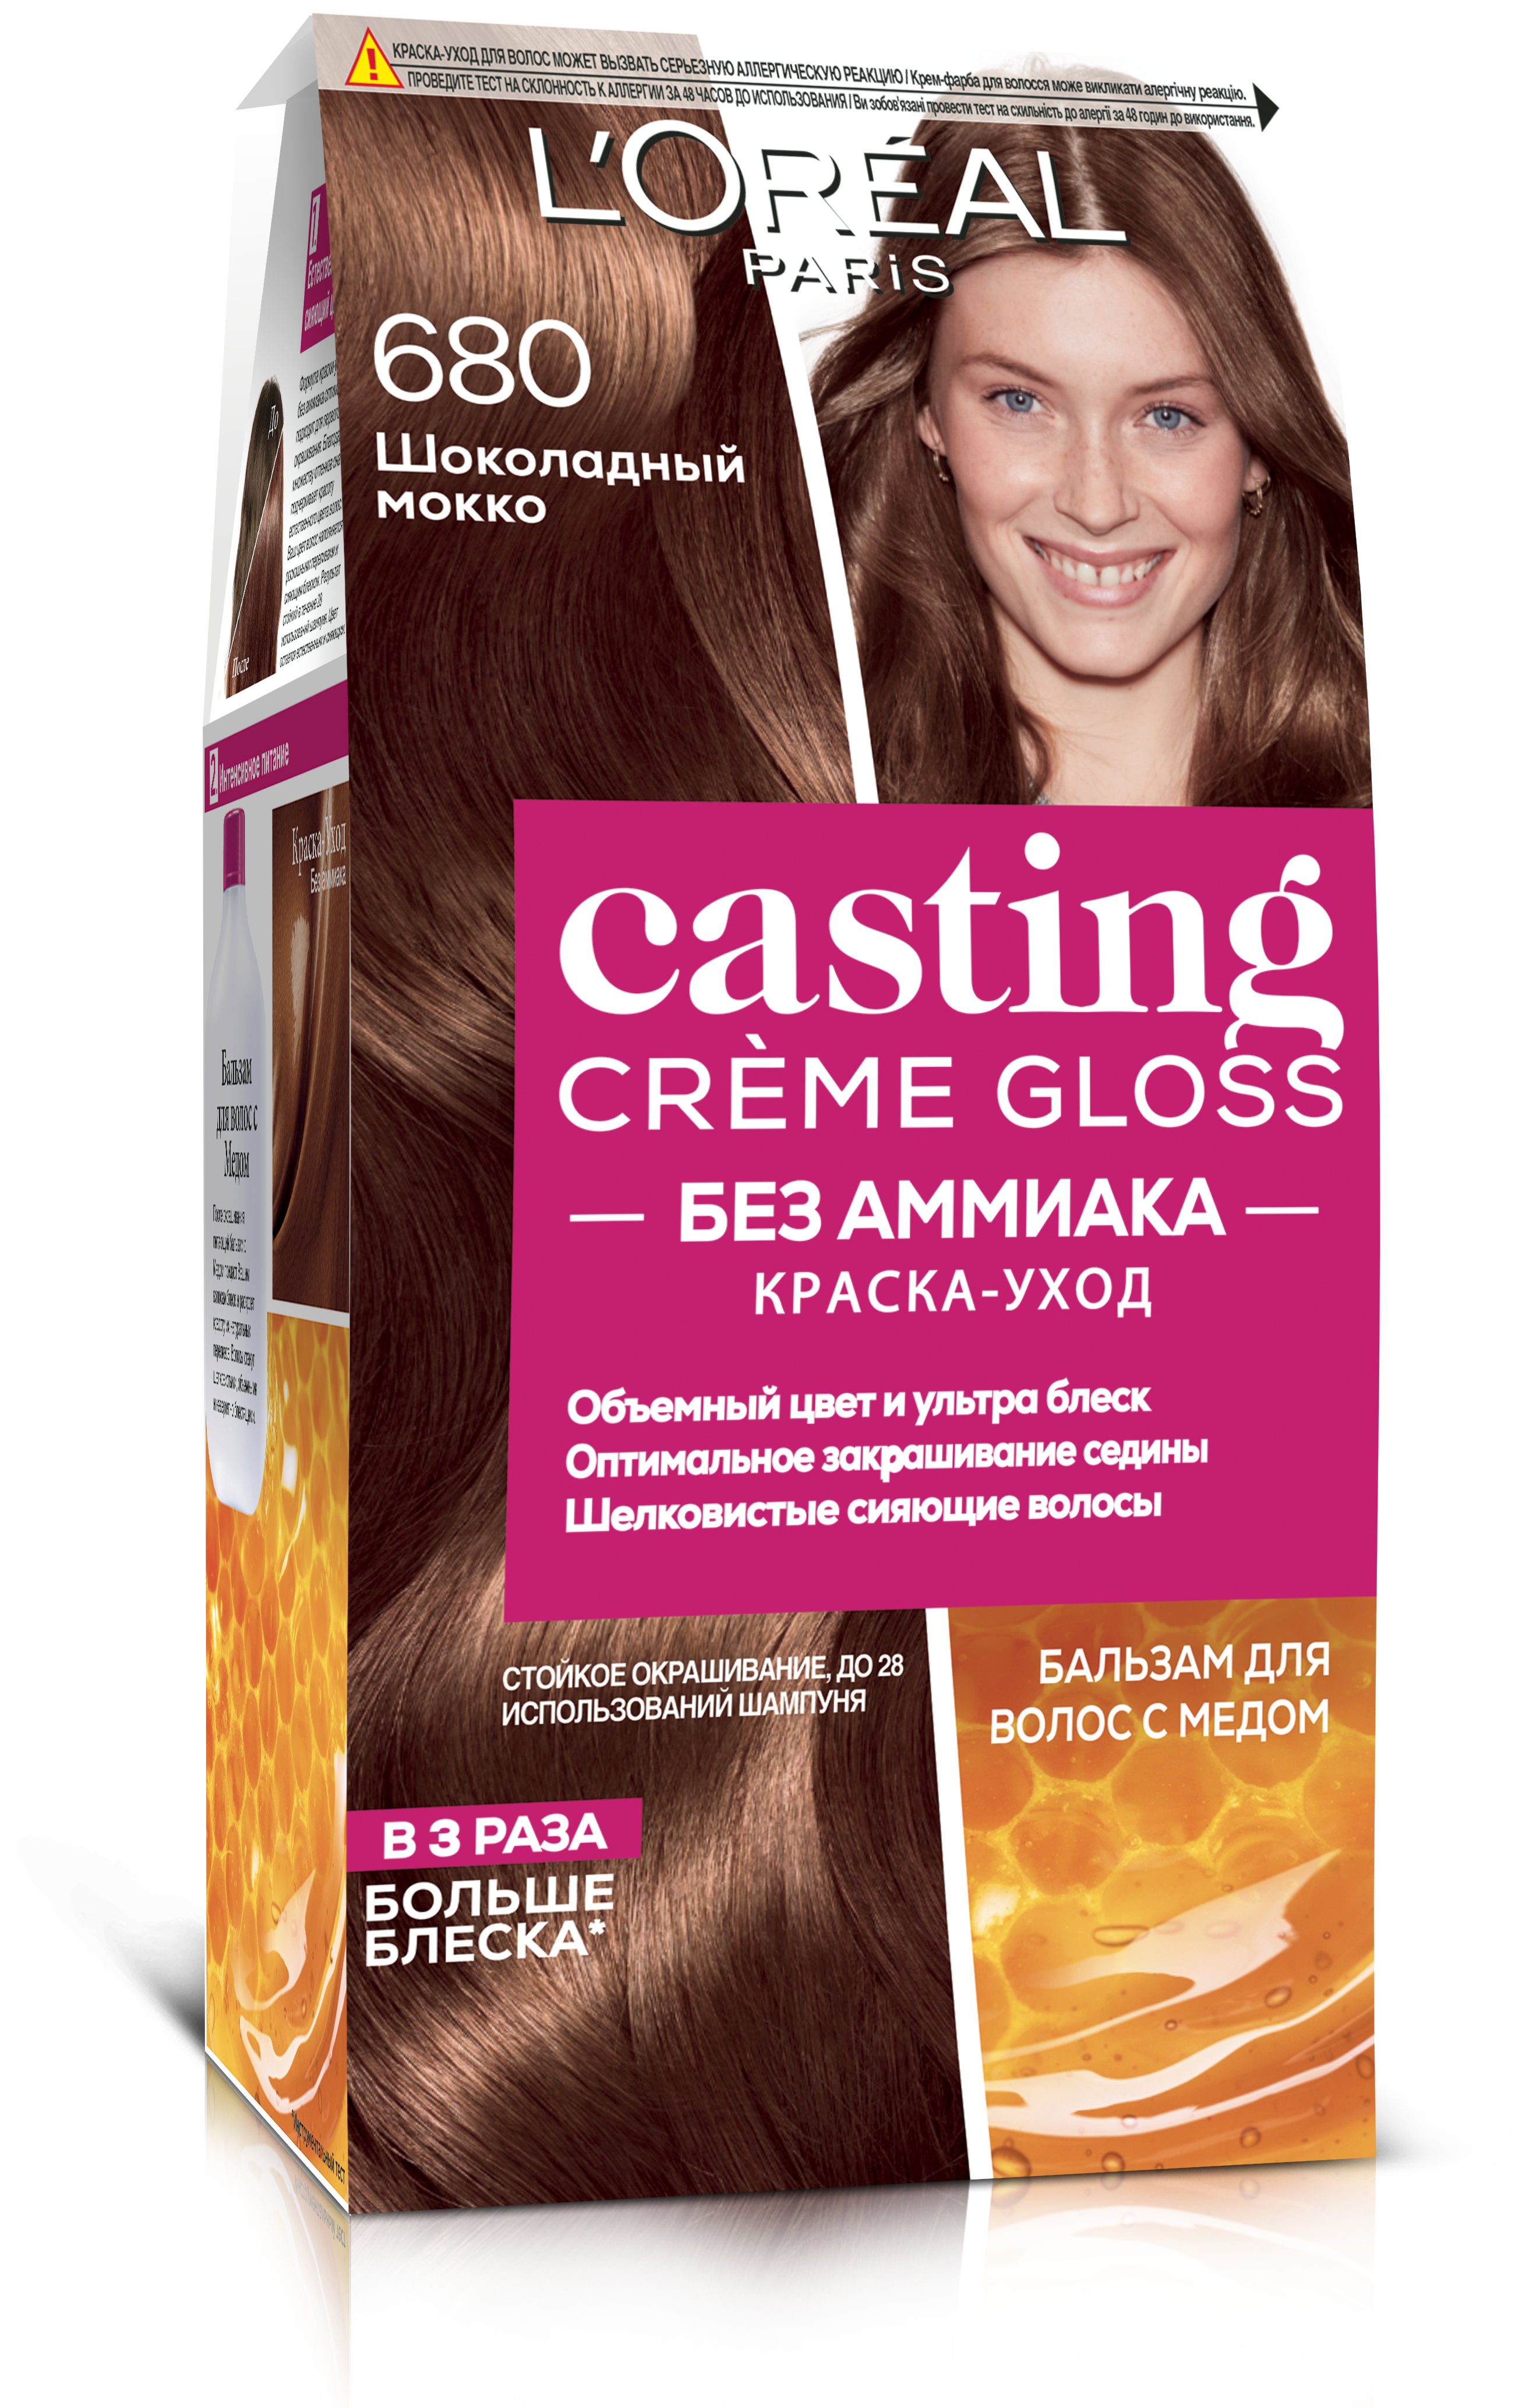 Фарба-догляд для волосся без аміаку L'Oreal Paris Casting Creme Gloss, відтінок 680 (Шоколадний мокко), 120 мл (A8862276) - фото 1